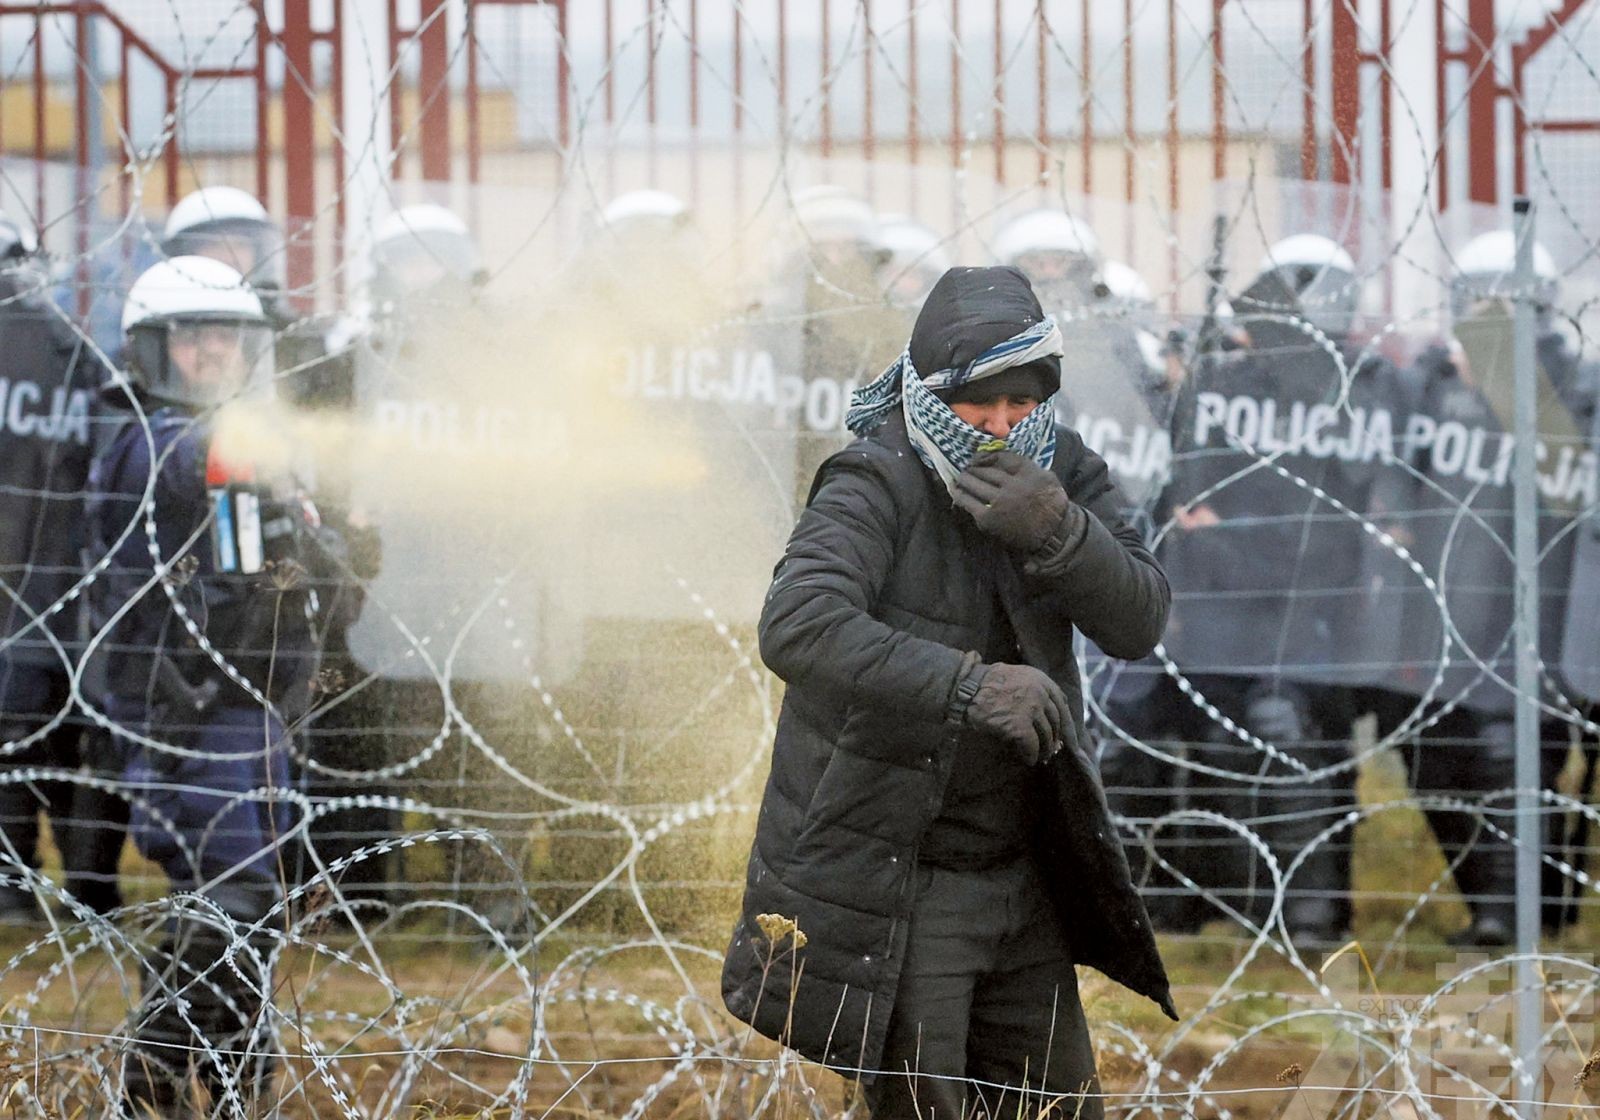 波蘭警祭水砲催淚彈轟難民